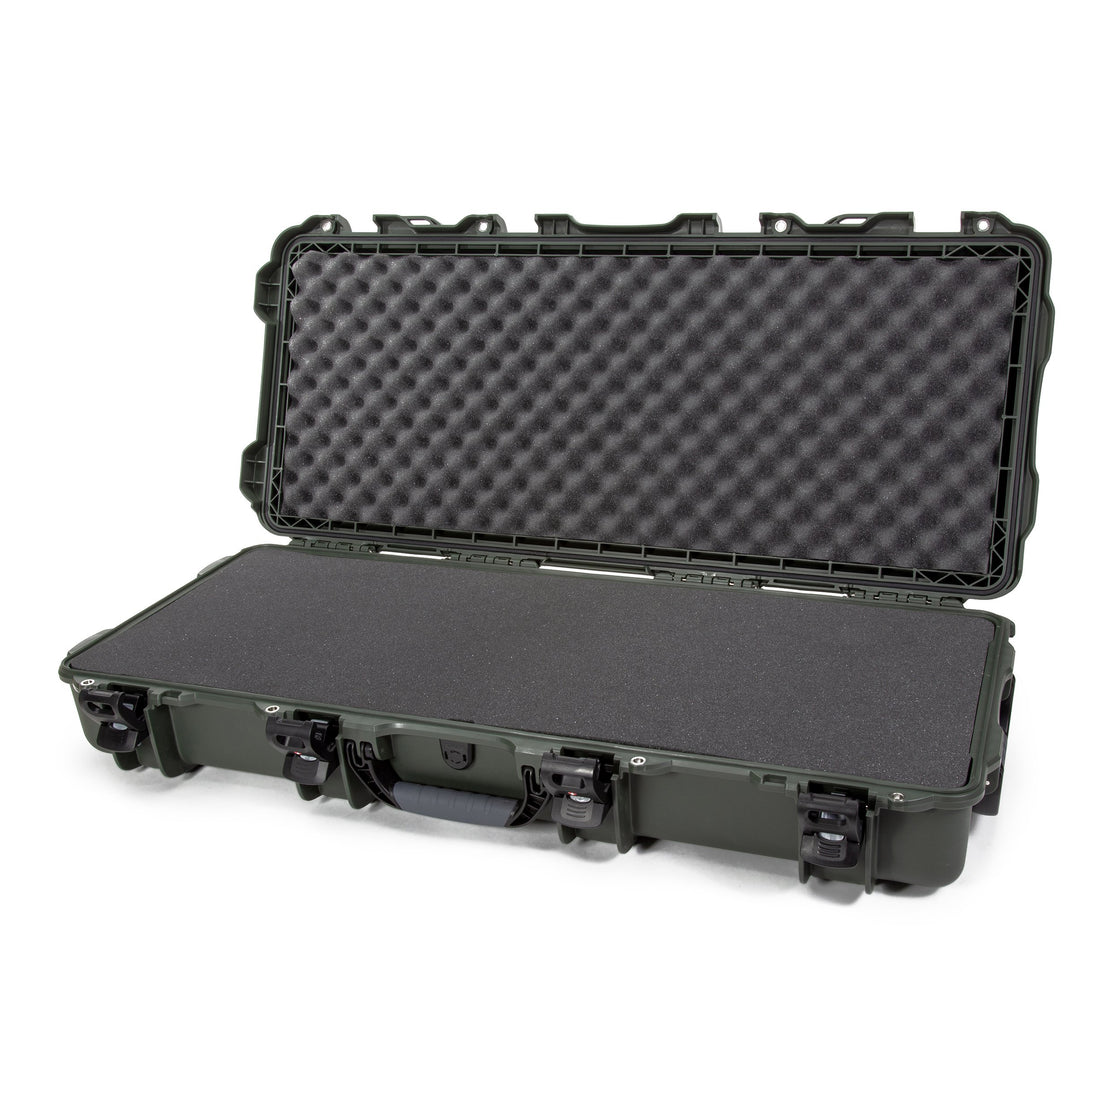 nanuk 960 waterproof hard case with foam insert for ursa pro w wheels black